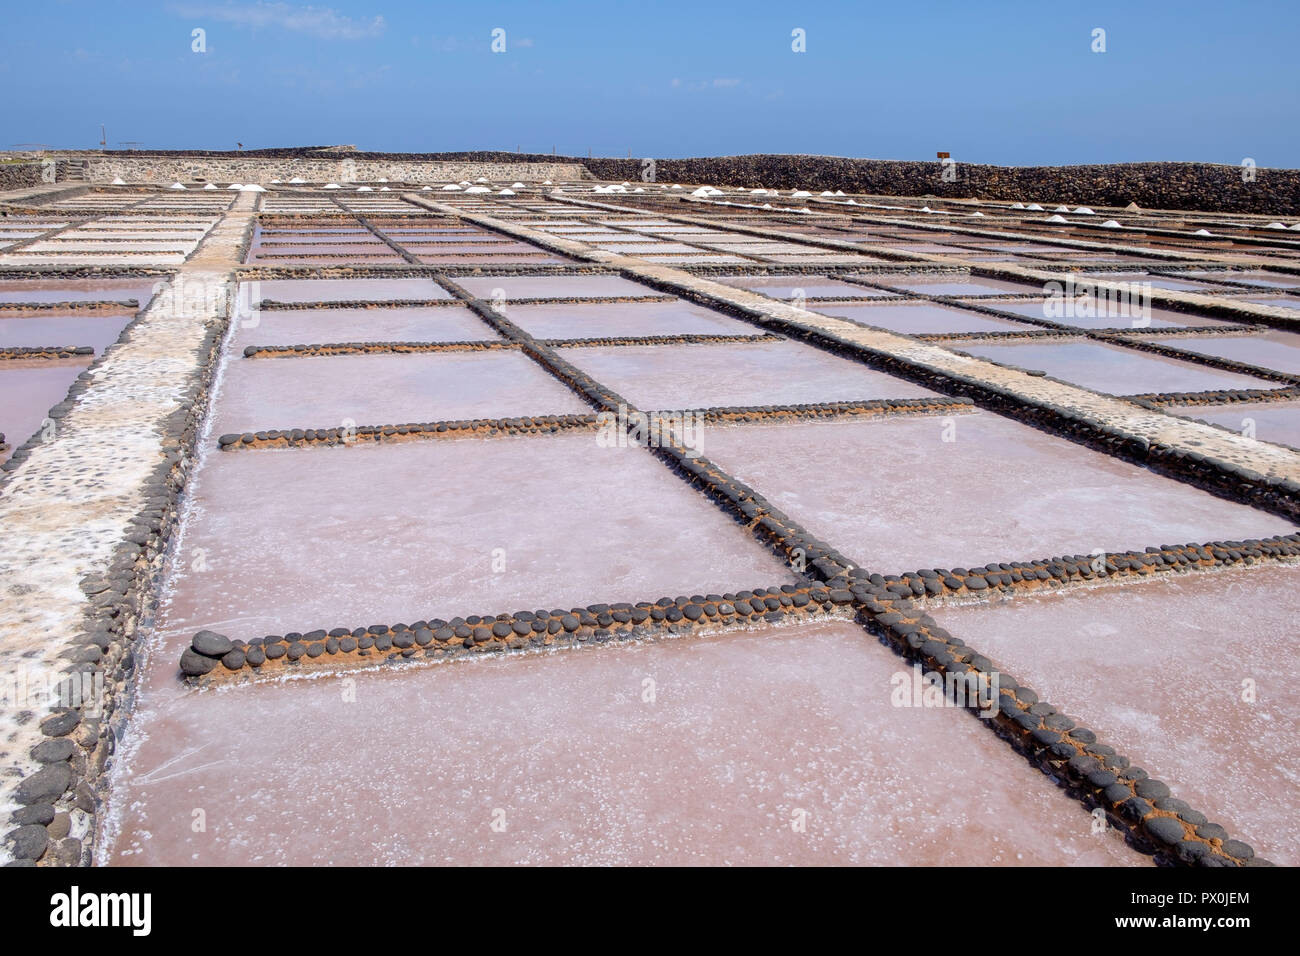 Salt flats at the Museo de las Salinas del Carmen, Fuerteventura. Stock Photo